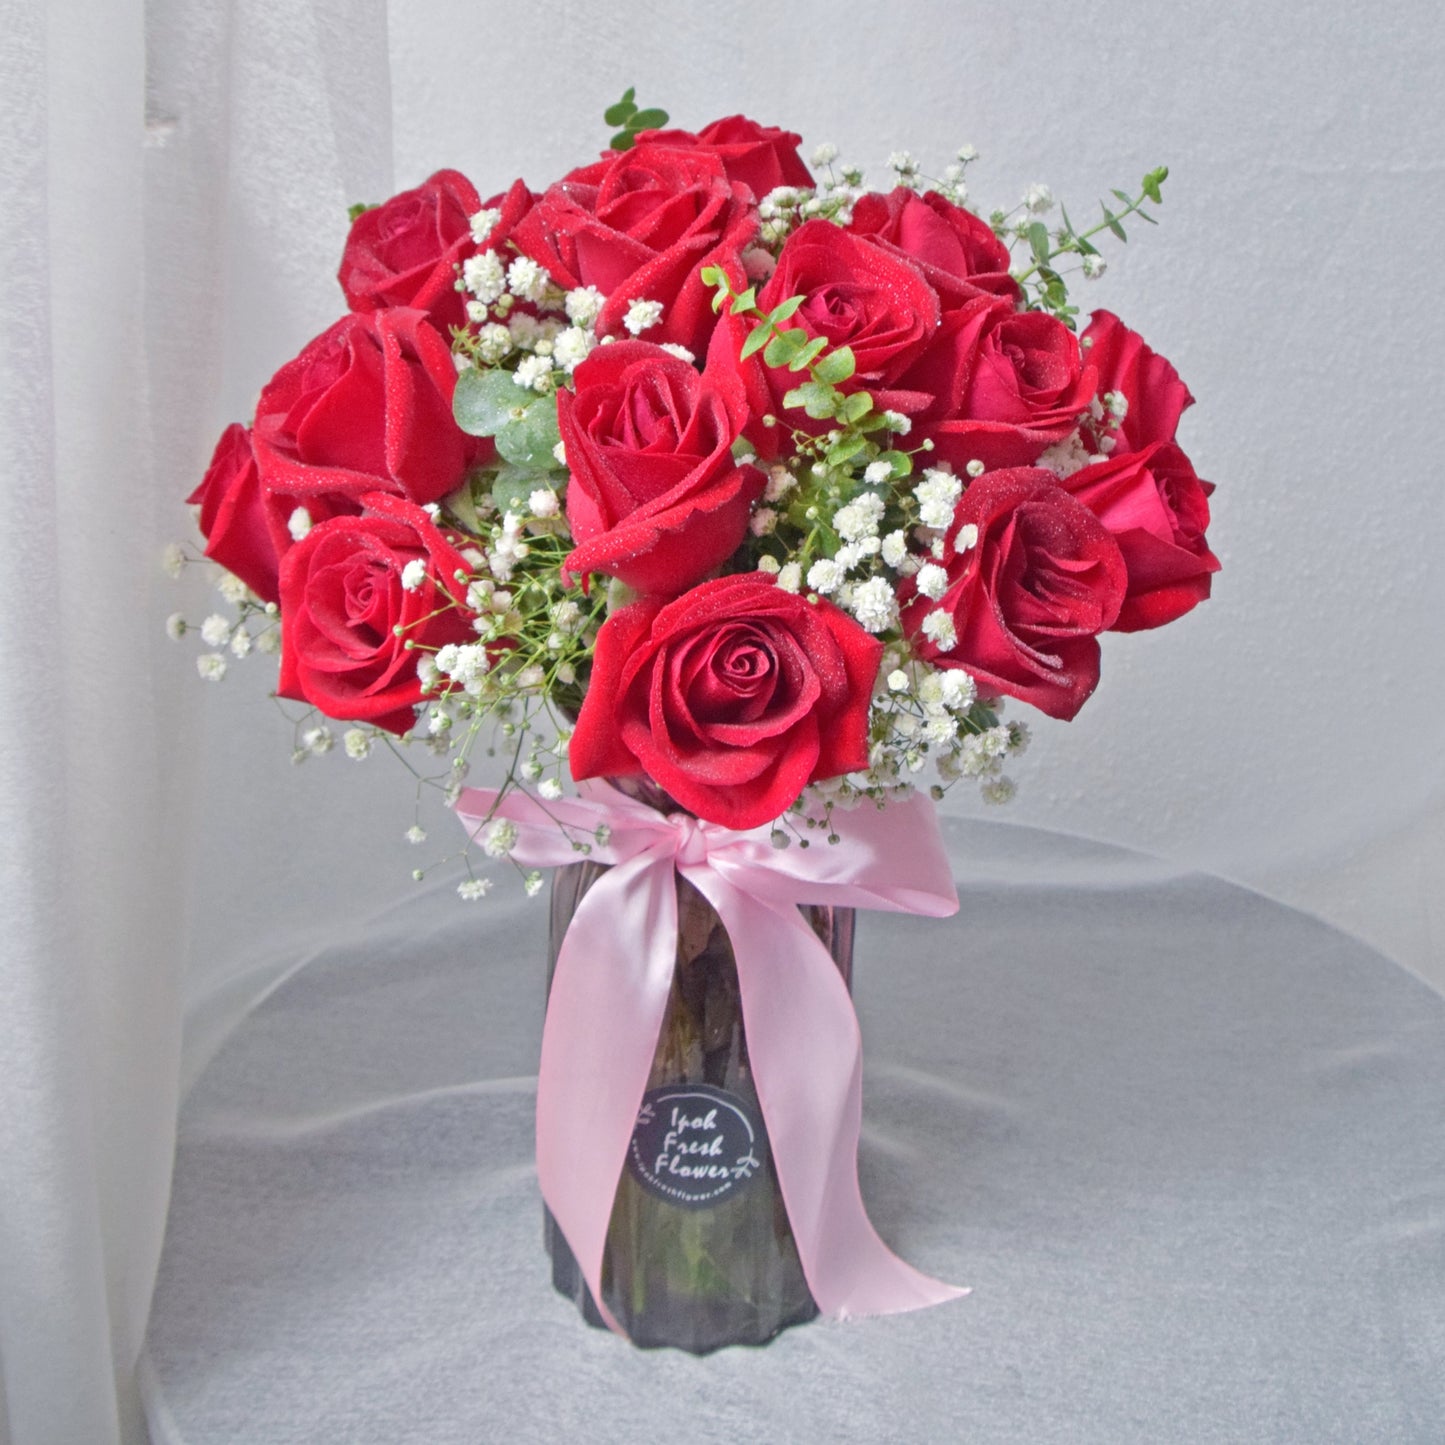 Red Velvet Rose Vase Arrangement| Fresh Flower In A Vase